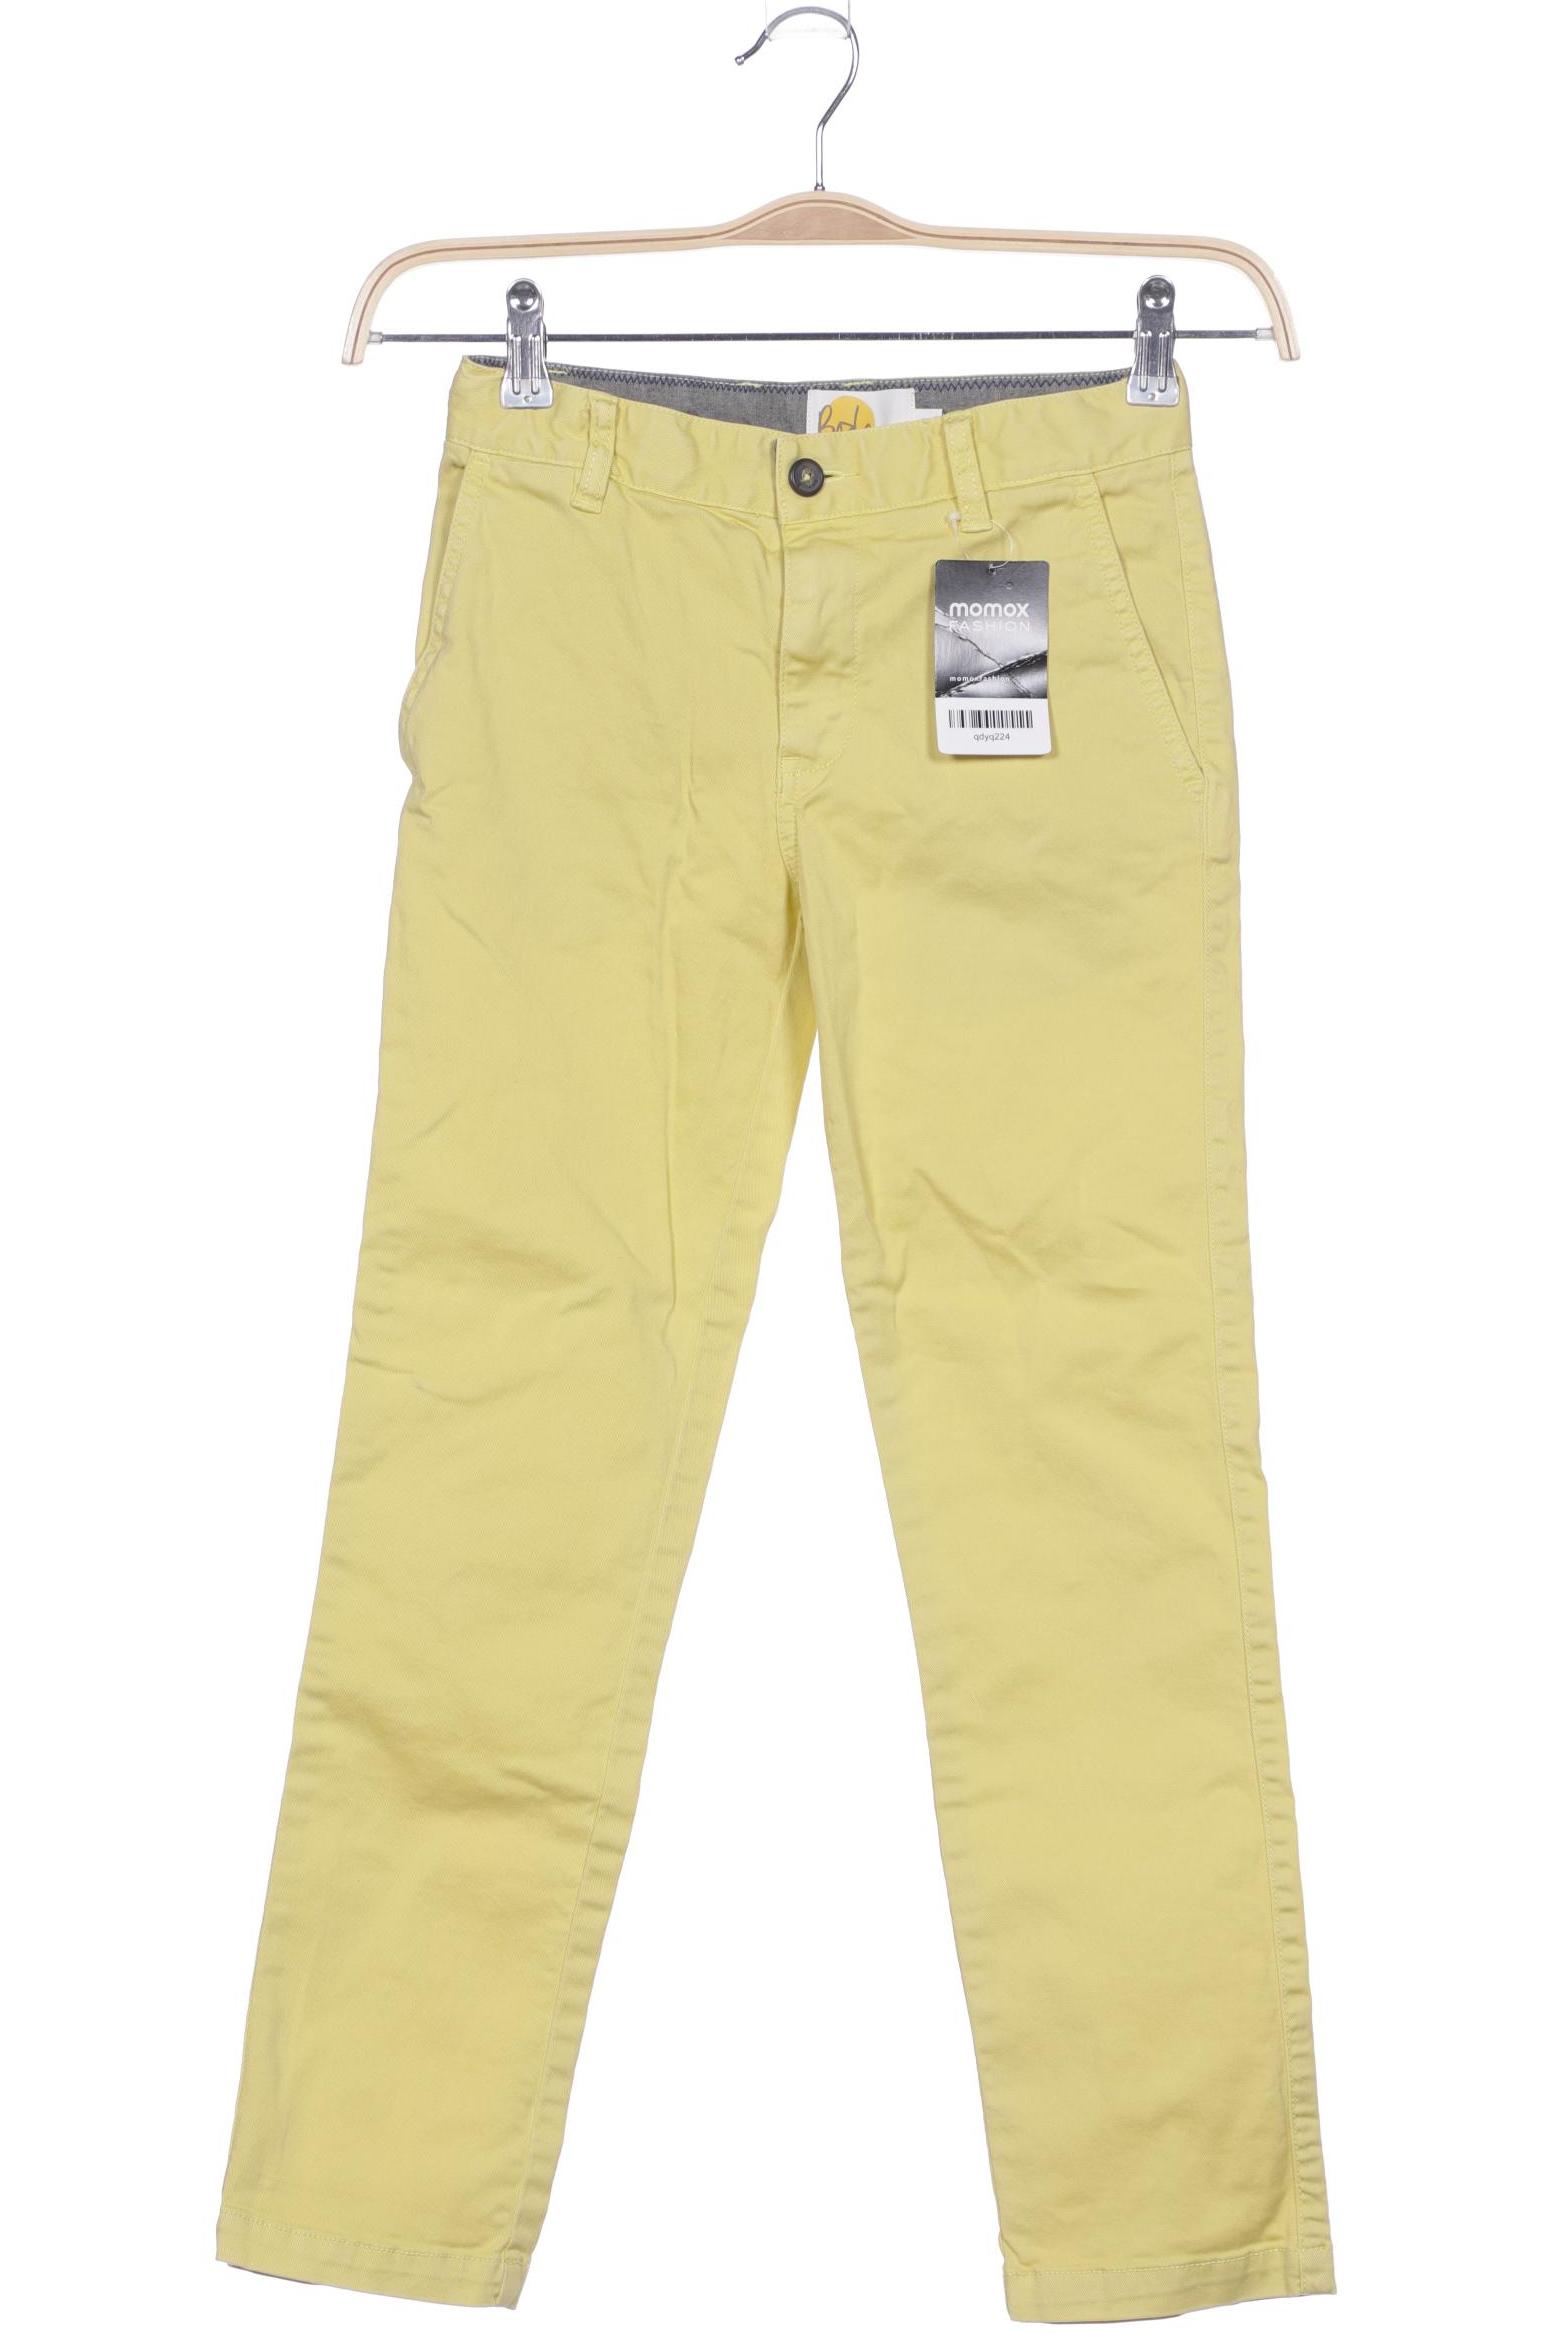 Boden Herren Jeans, gelb, Gr. 140 von Boden